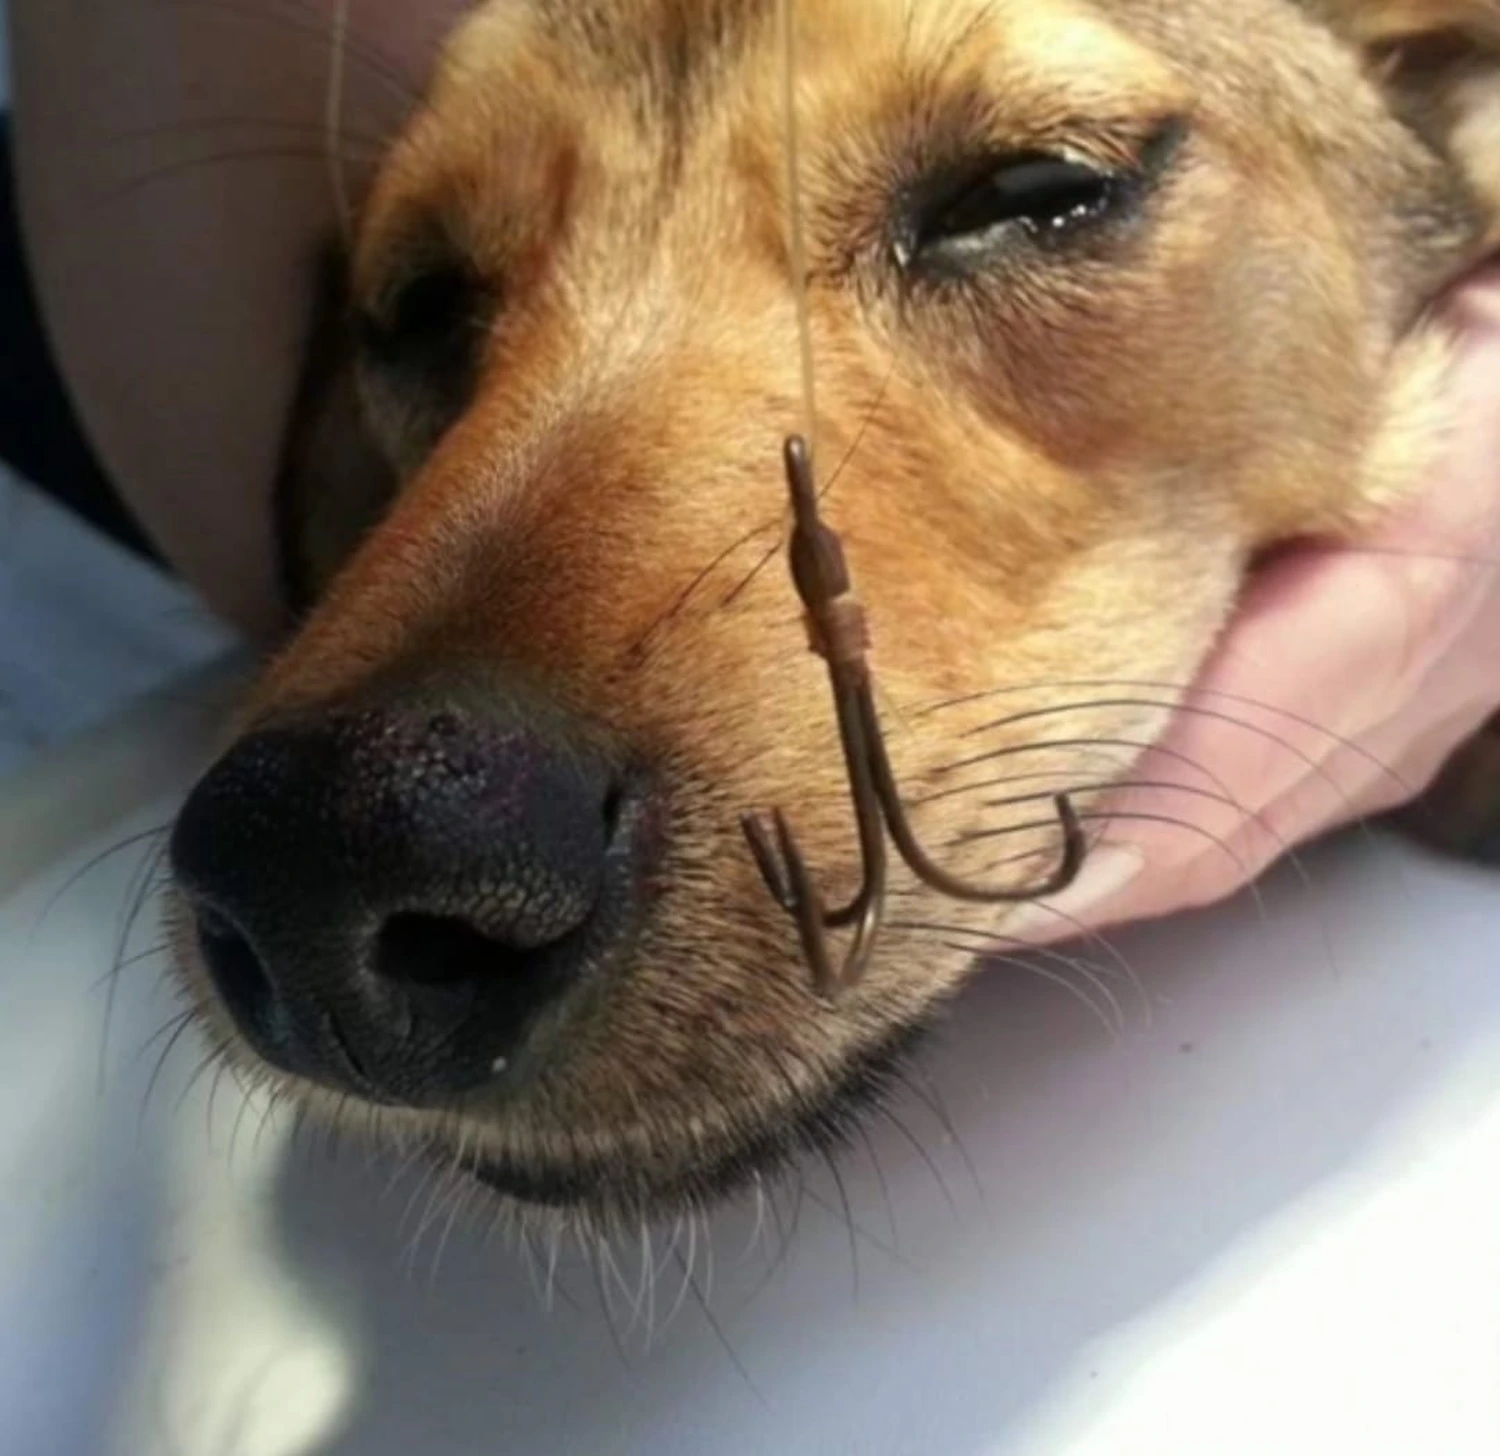 Angelhaken aus der Nase des Hundes genommen